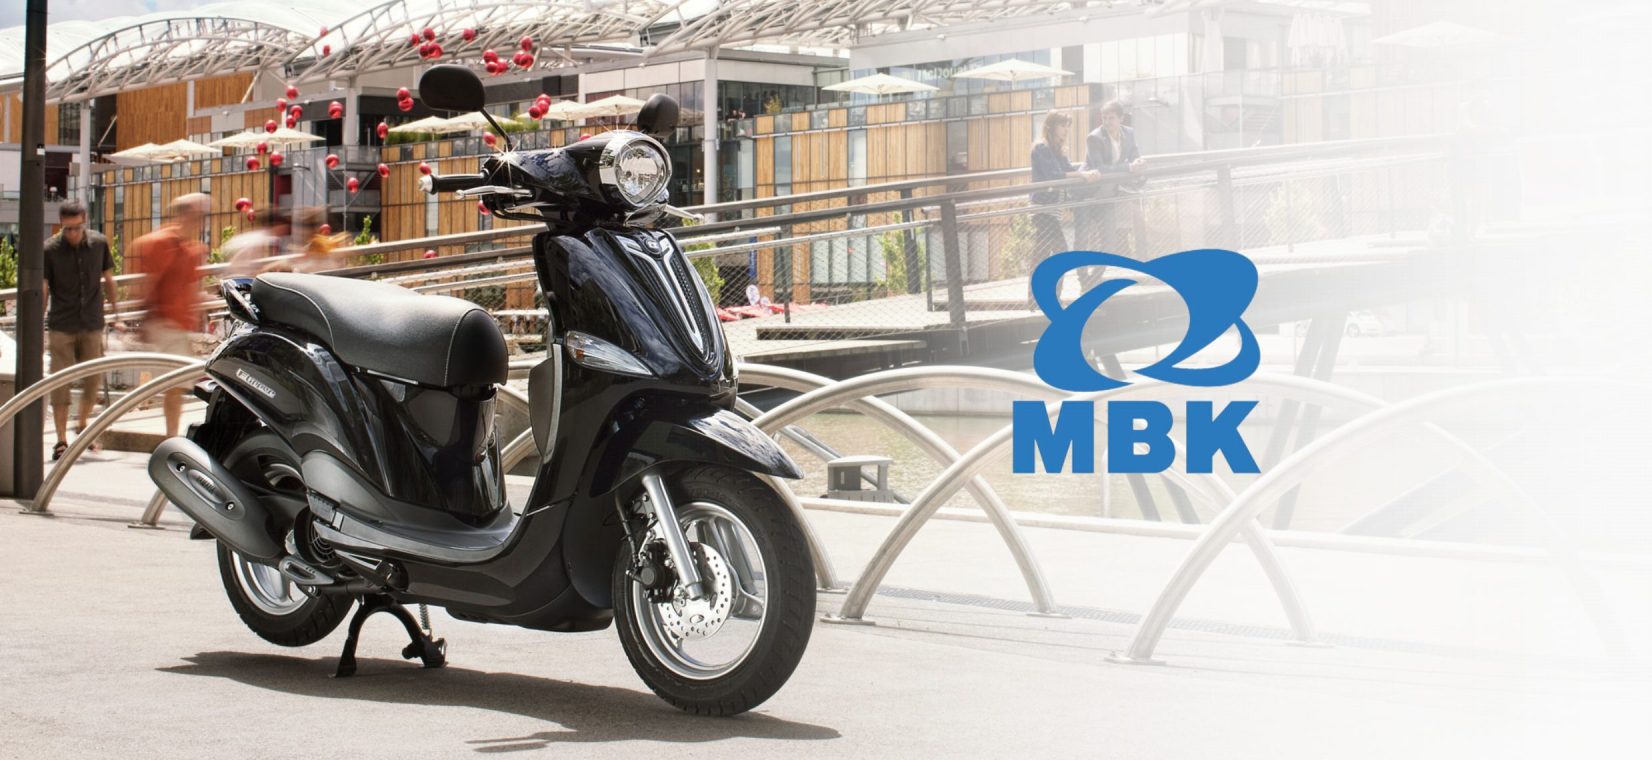 Visuel MBK : une moto dans un environnement de ville, avec un logo MBK